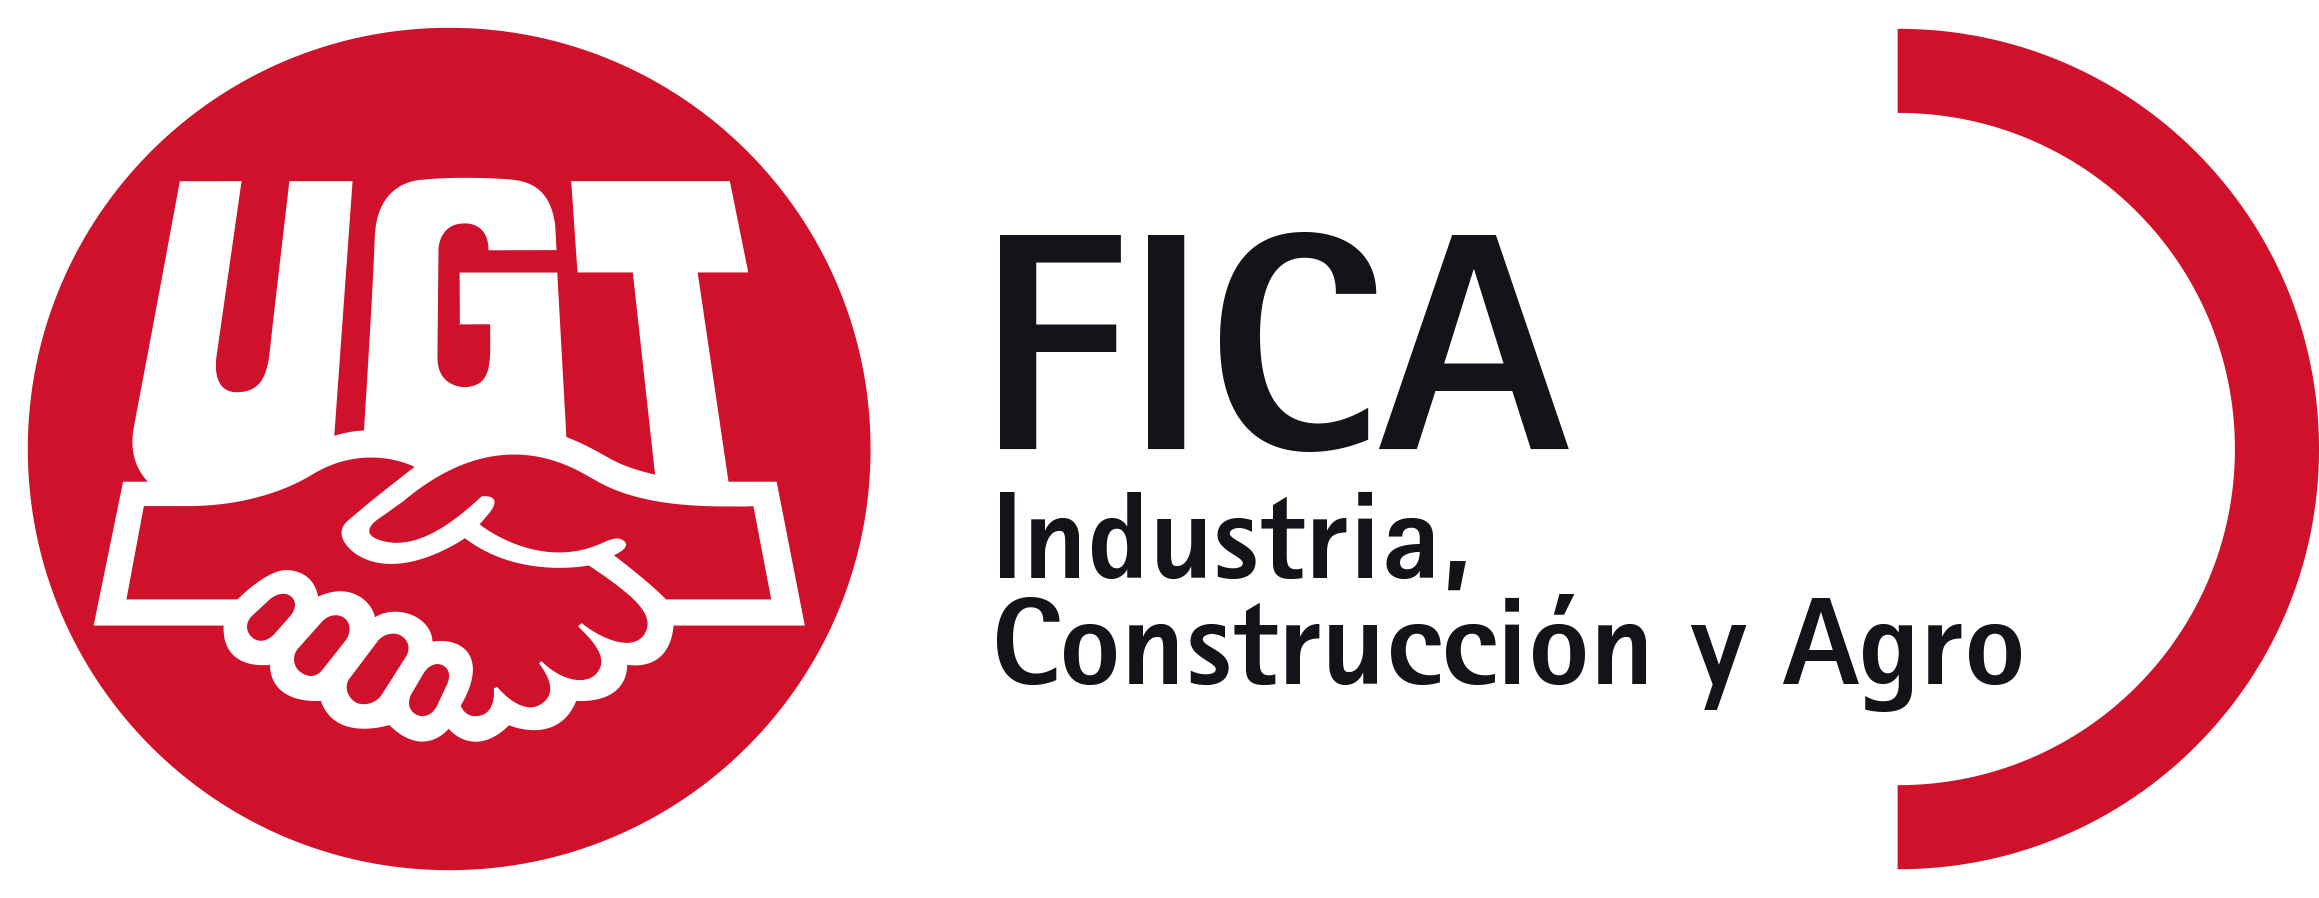 UGT FICA forma parte de la Fundación CEMA